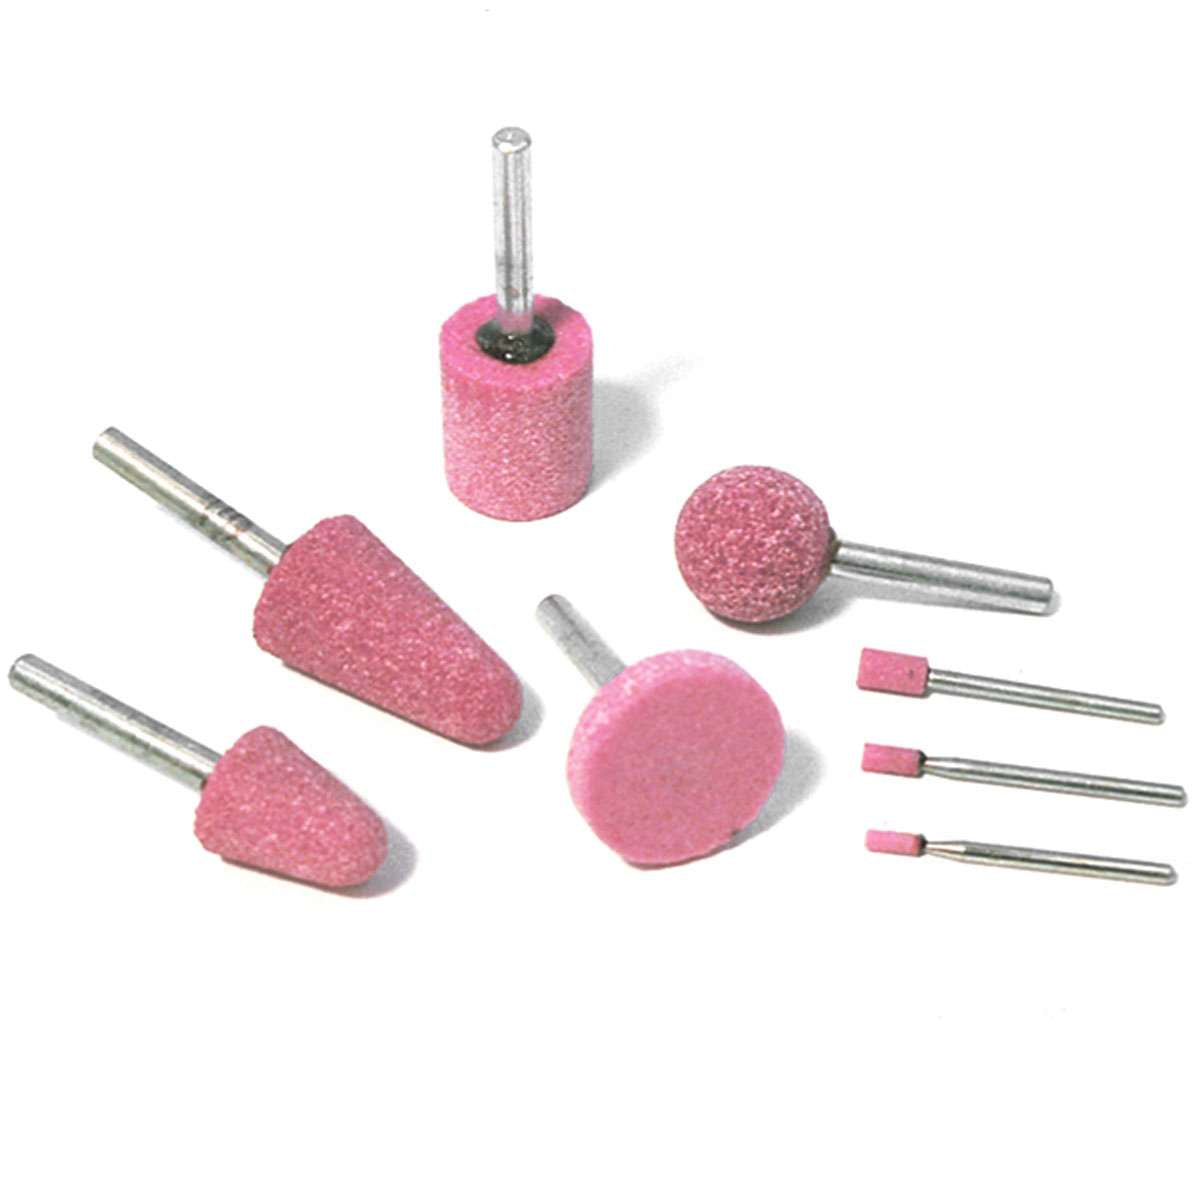 Mole cilindriche vetrificate rosa per sgrossare e smerigliare D.4x8 Rosver 25pz